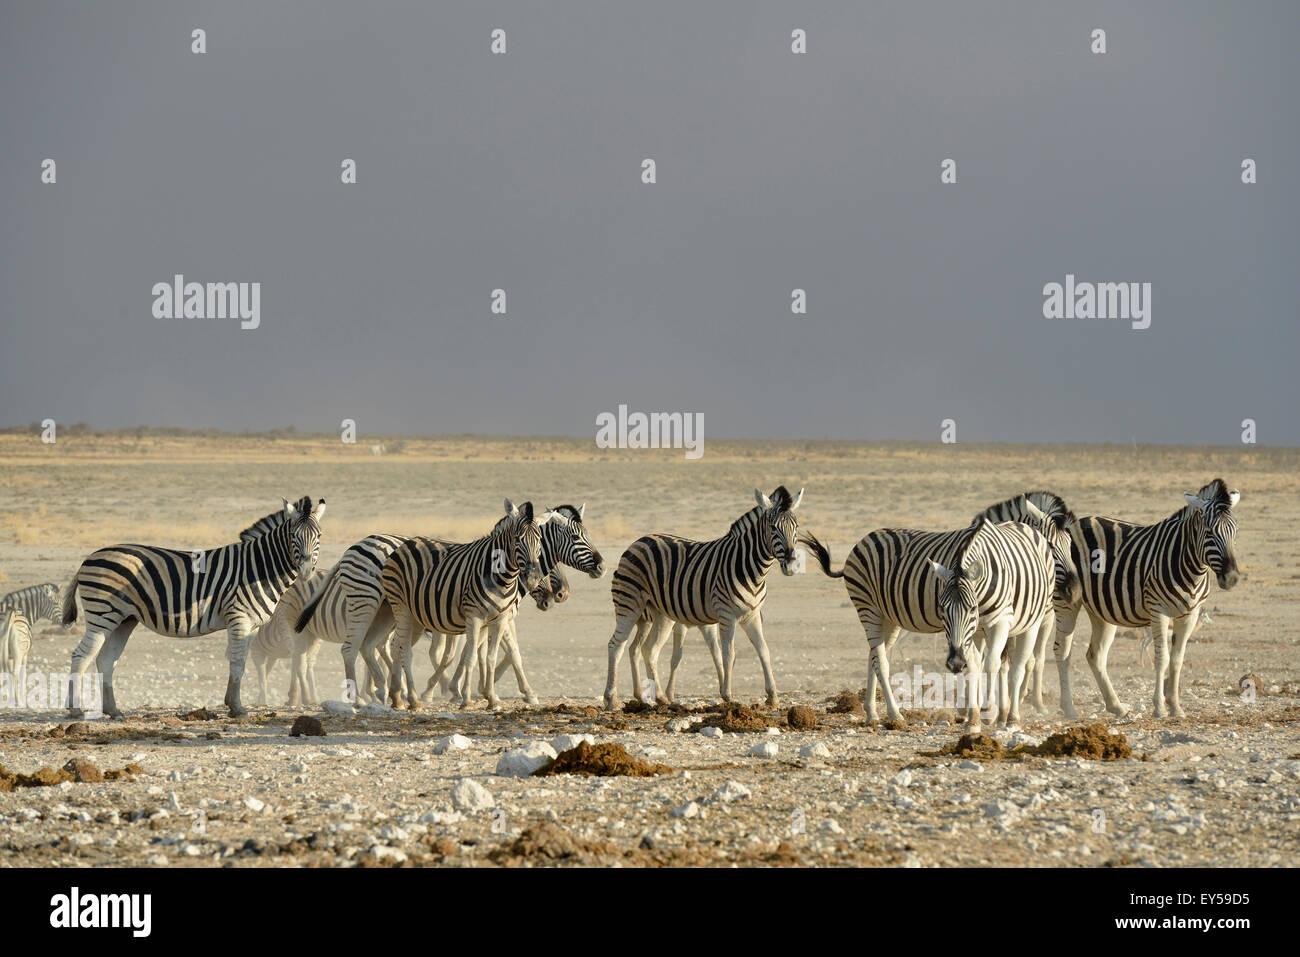 Llanuras cebras - Etosha Namibia Foto de stock